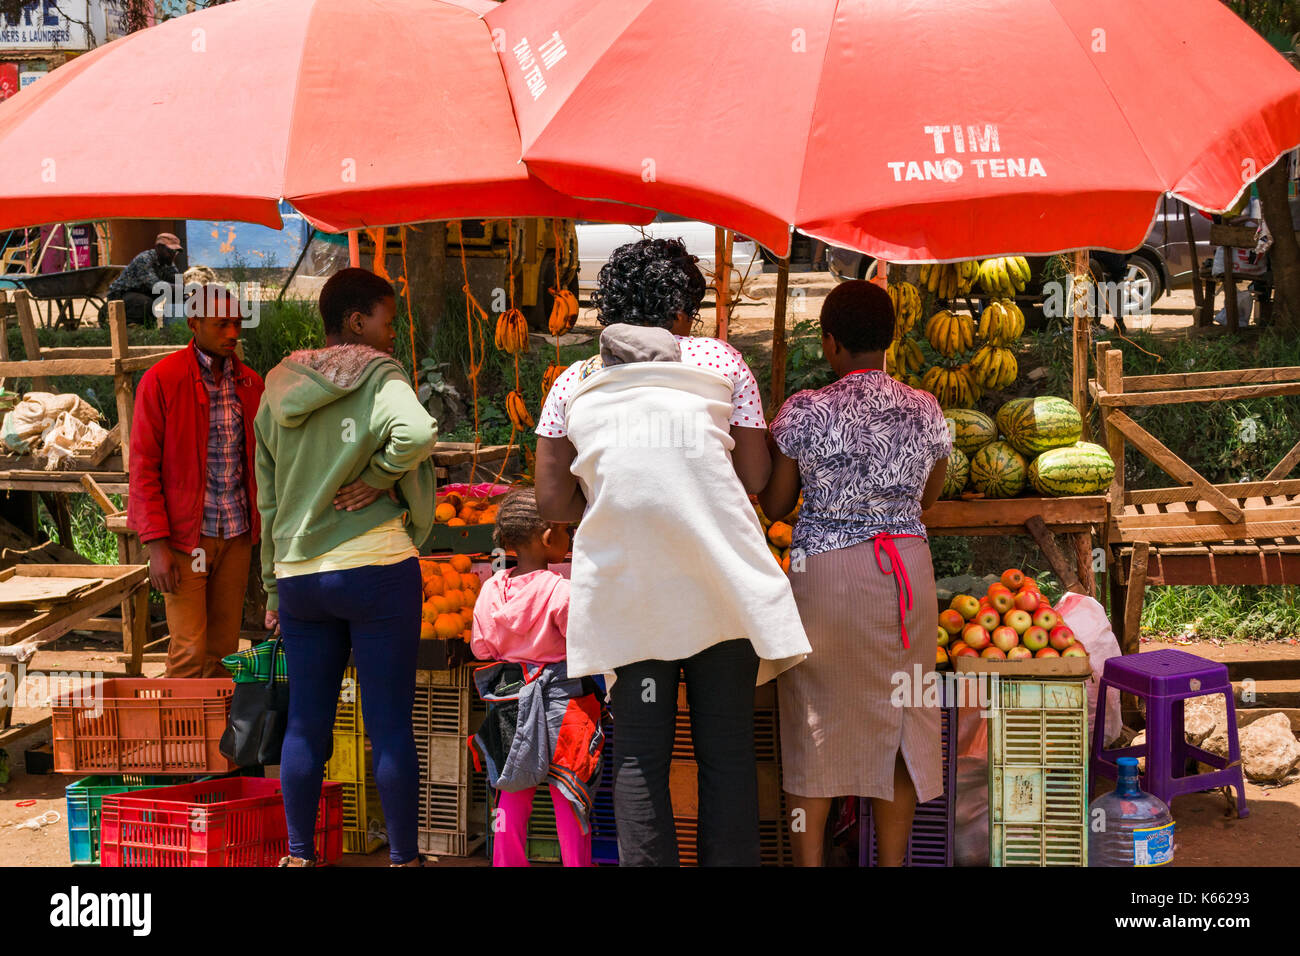 Le bancarelle del mercato in ombra sotto gli ombrelloni per la vendita di frutta e verdura come persone stand browsing, Kenya Foto Stock